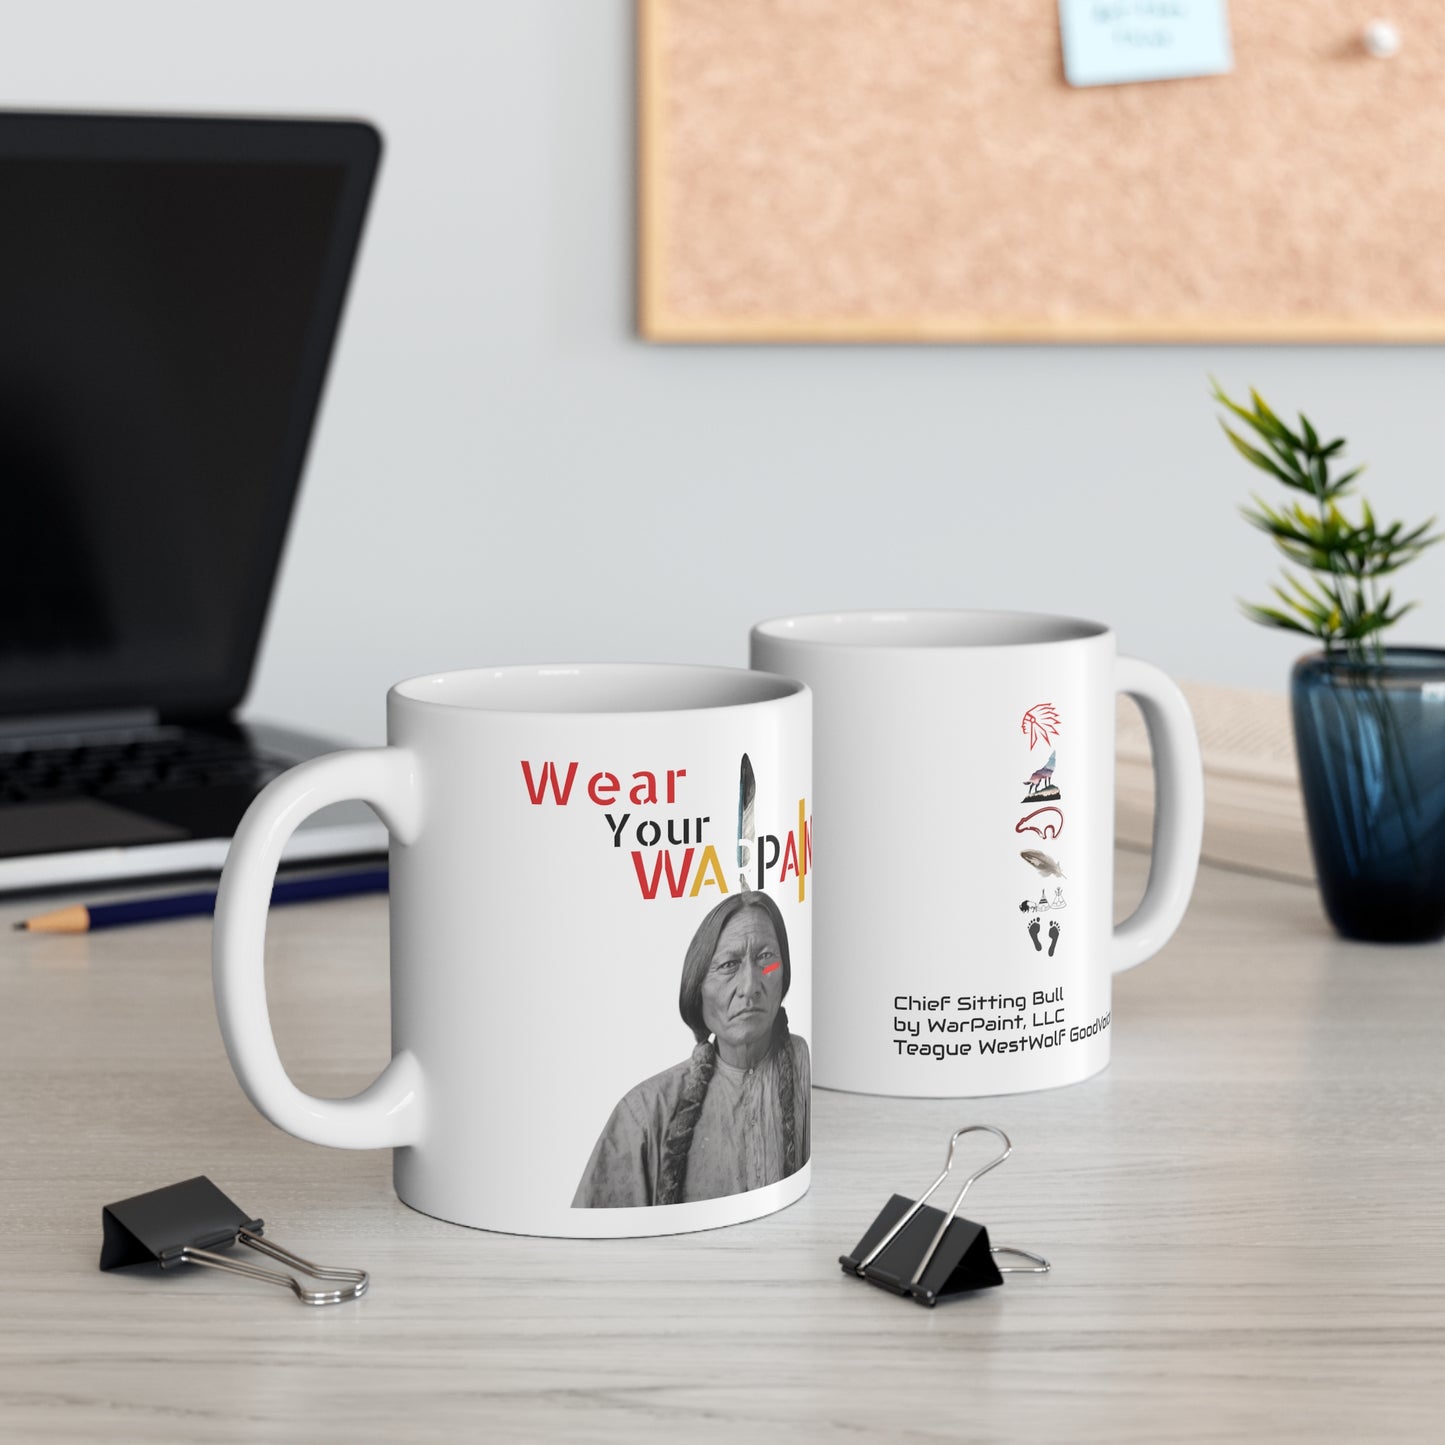 Wear Your WarPaint Chief Sitting Bull - Ceramic Mug 11oz